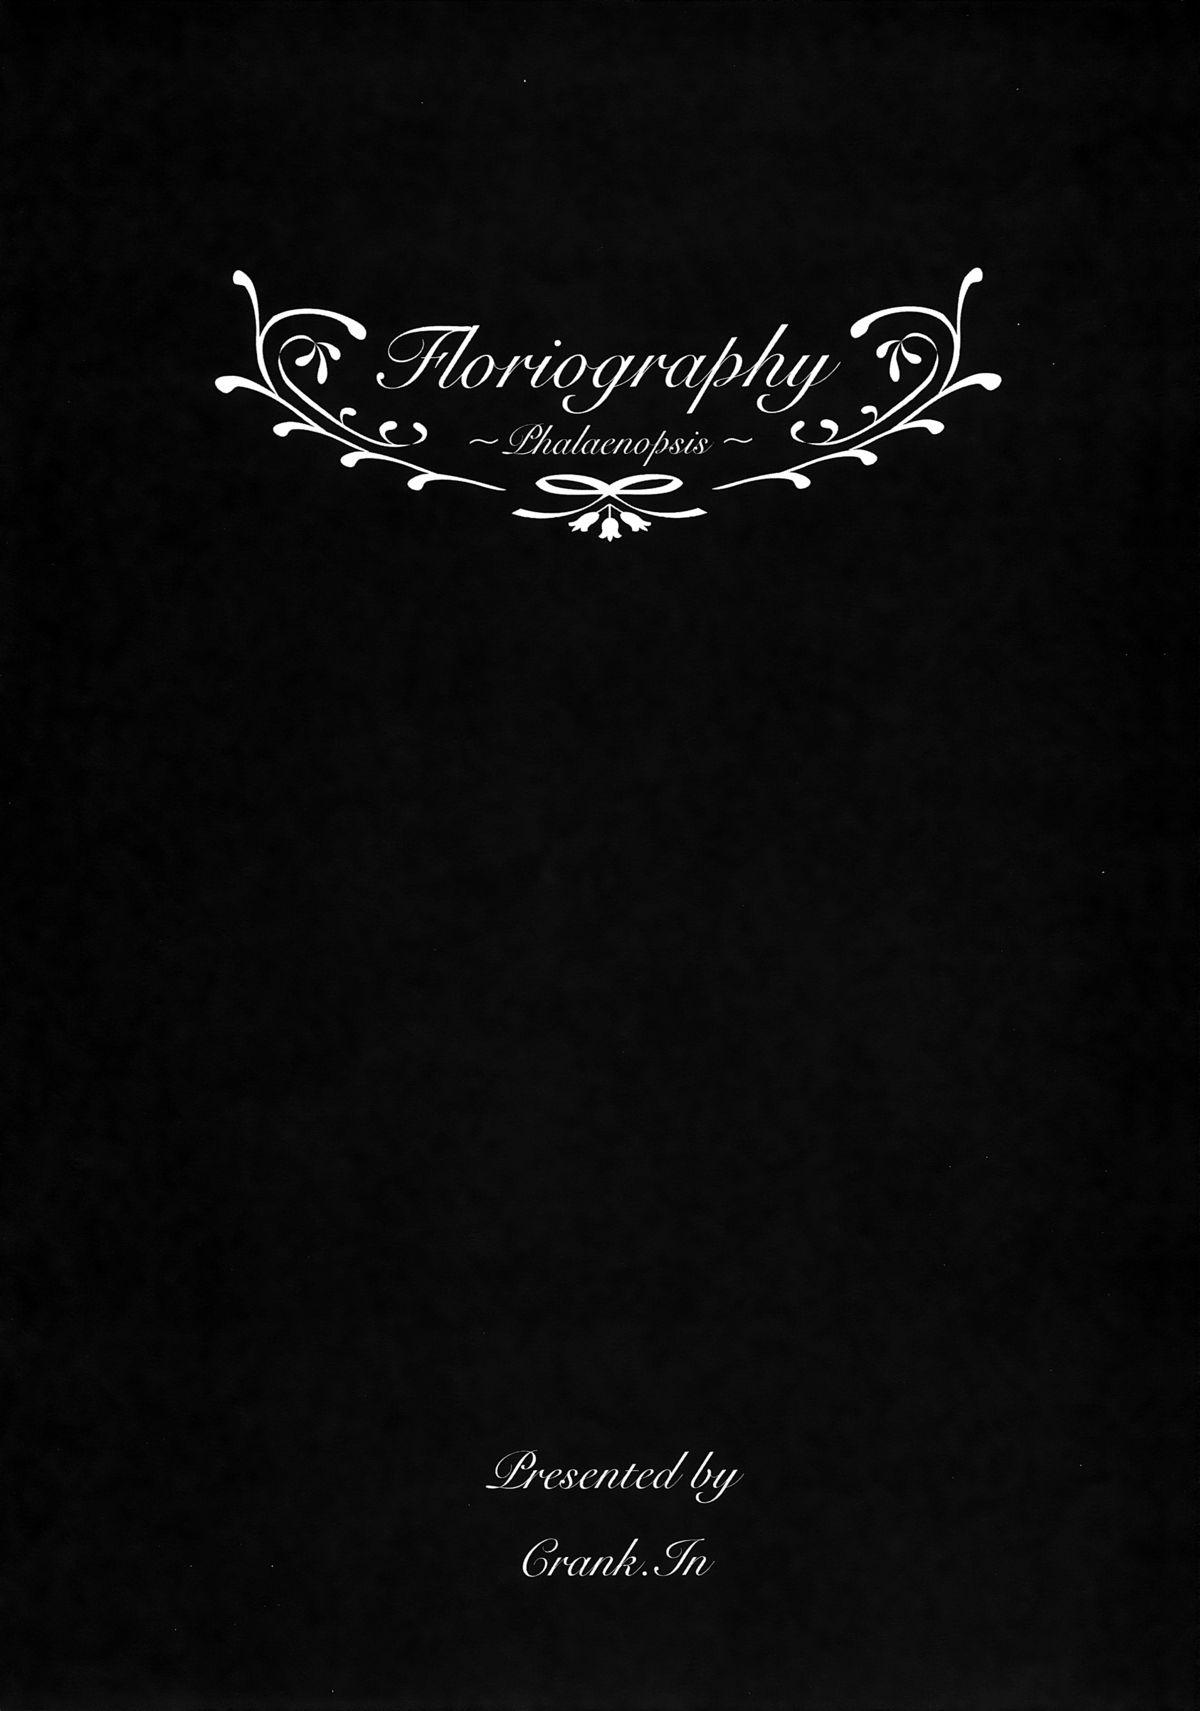 Francaise Floriography Seduction Porn - Page 2